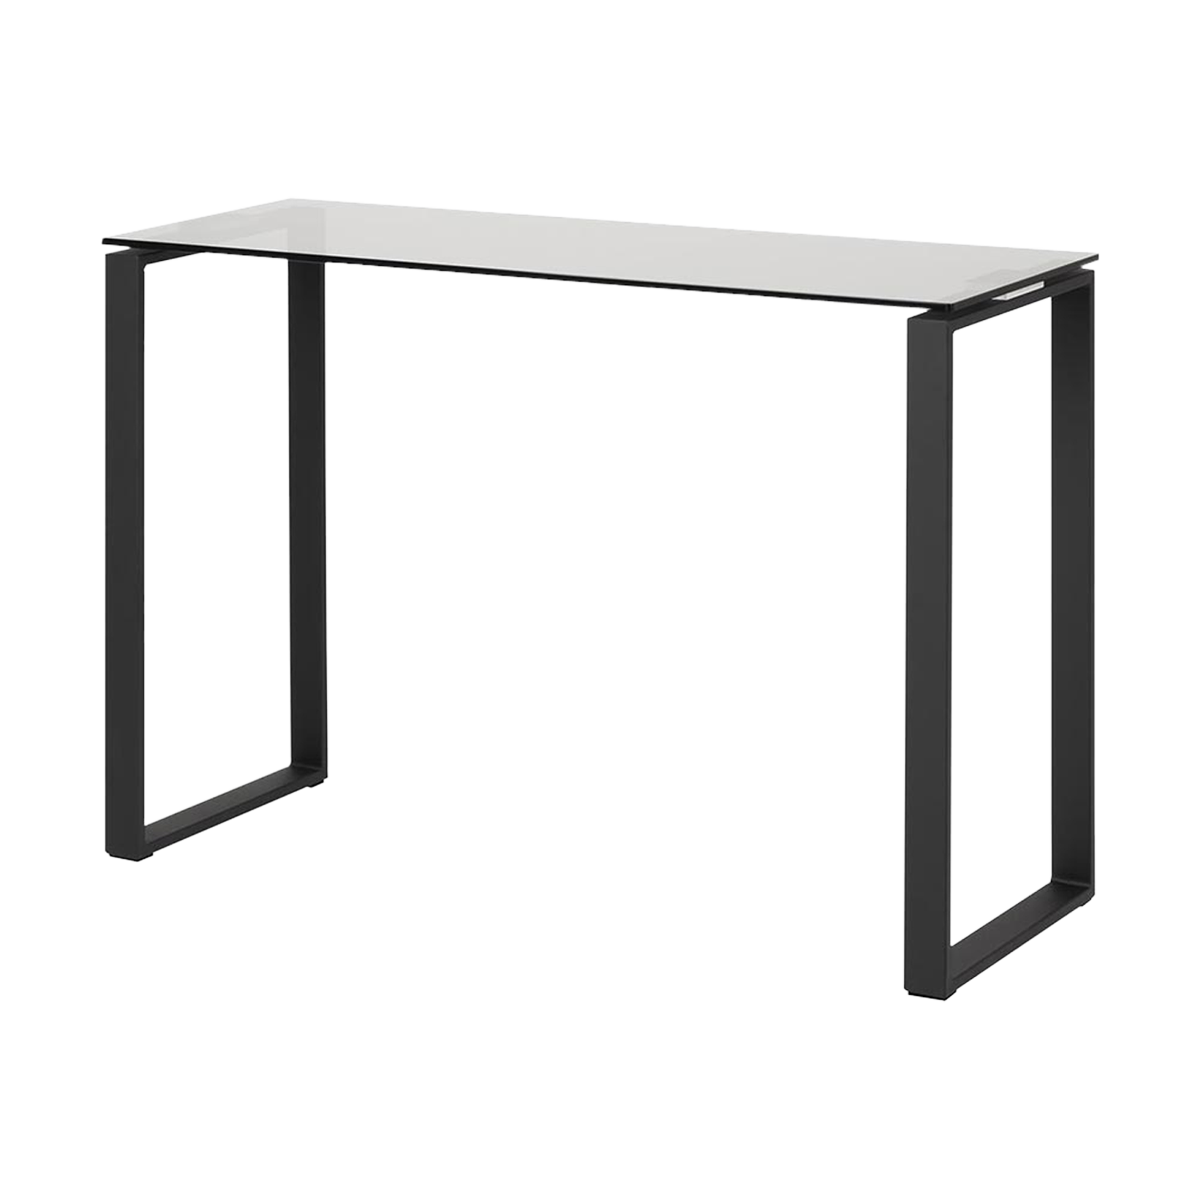 Rolf glazen sidetable - met zwart onderstel - 110 x 76 cm